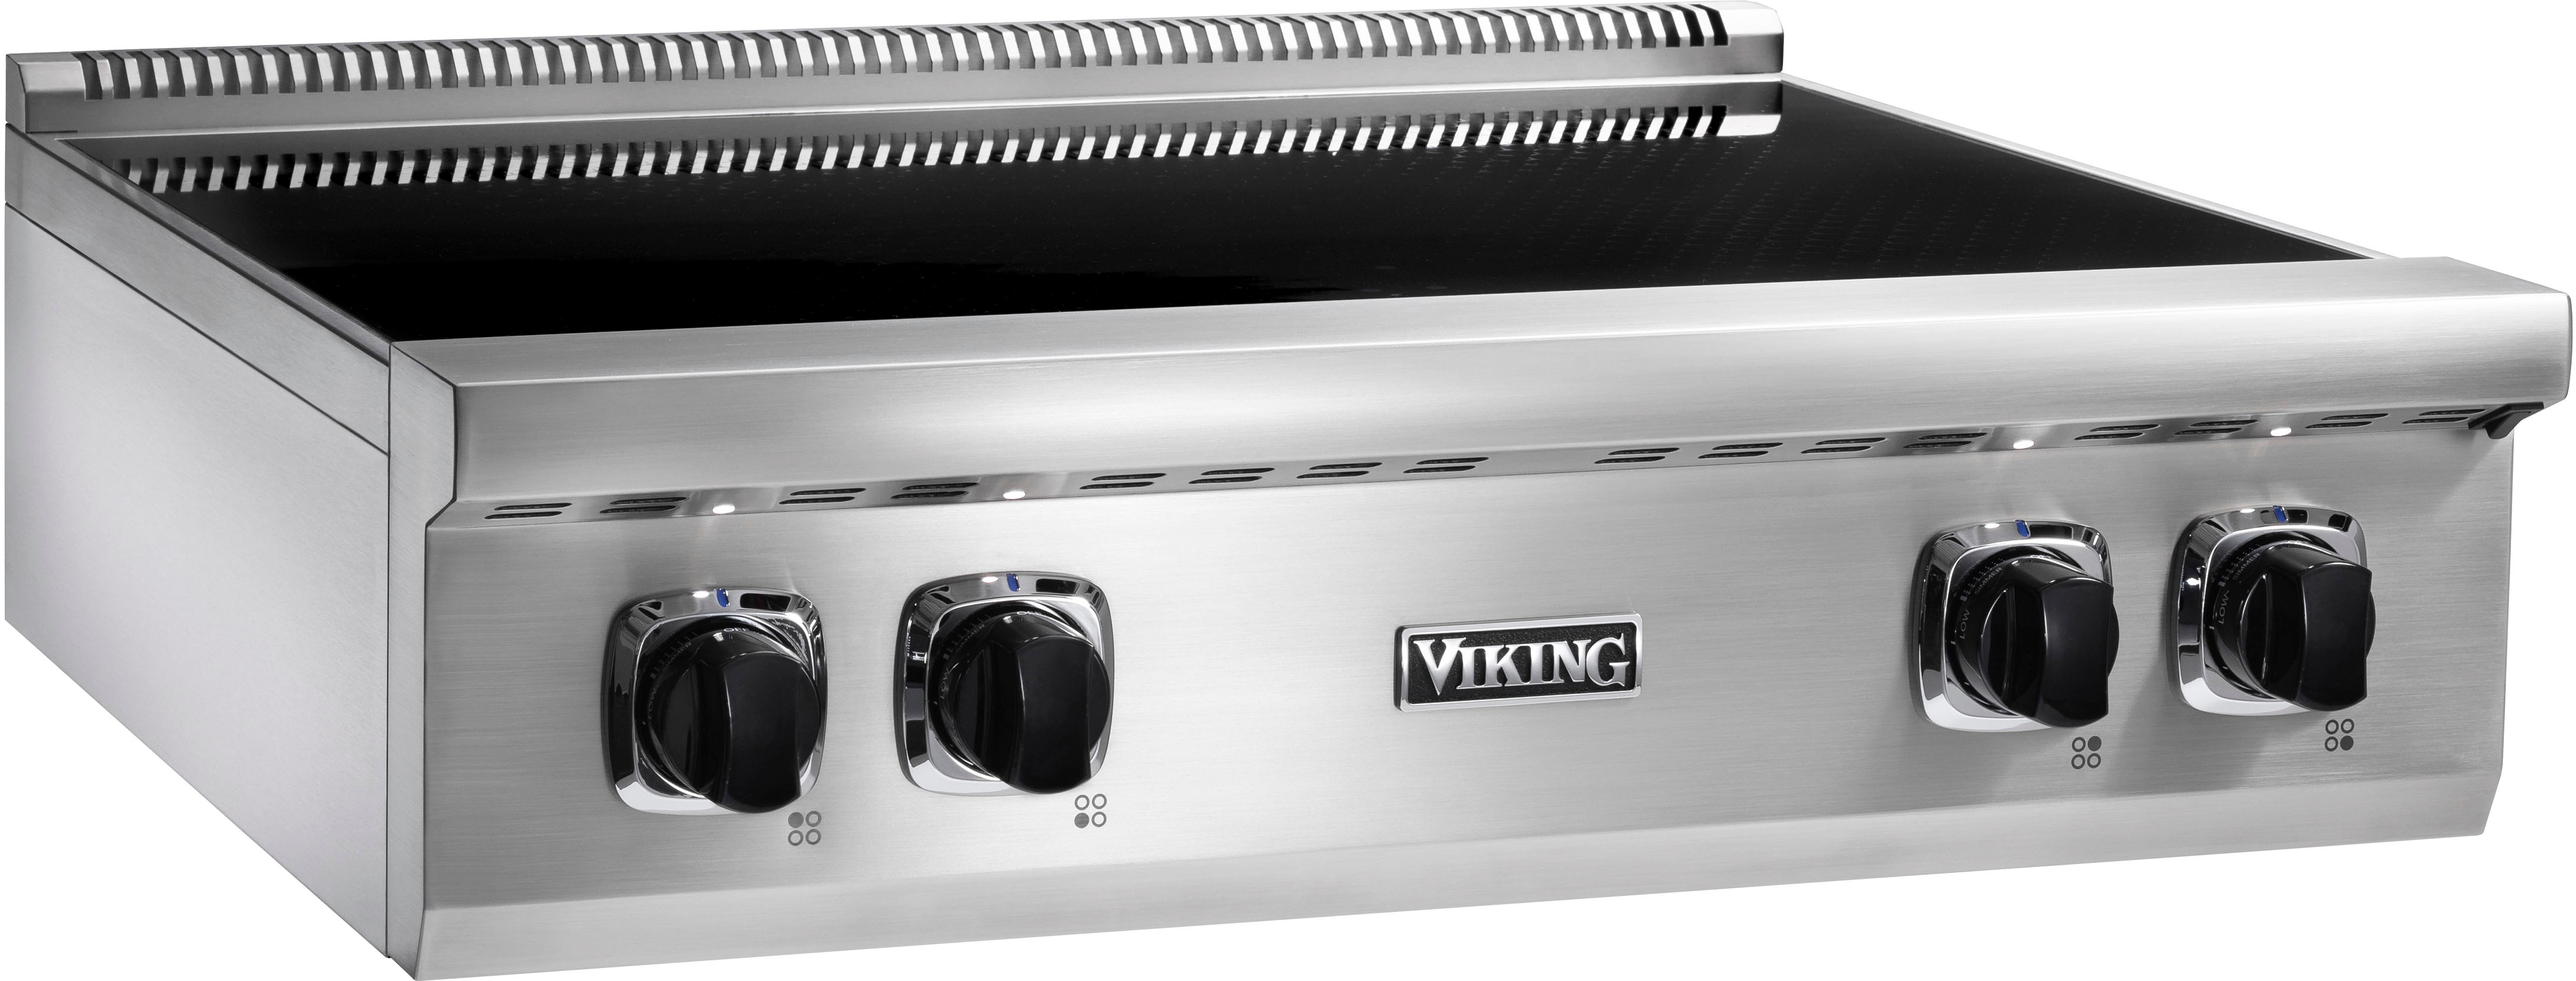 Viking 30-Inch Induction Range in Slate Blue - VIR53024BSB